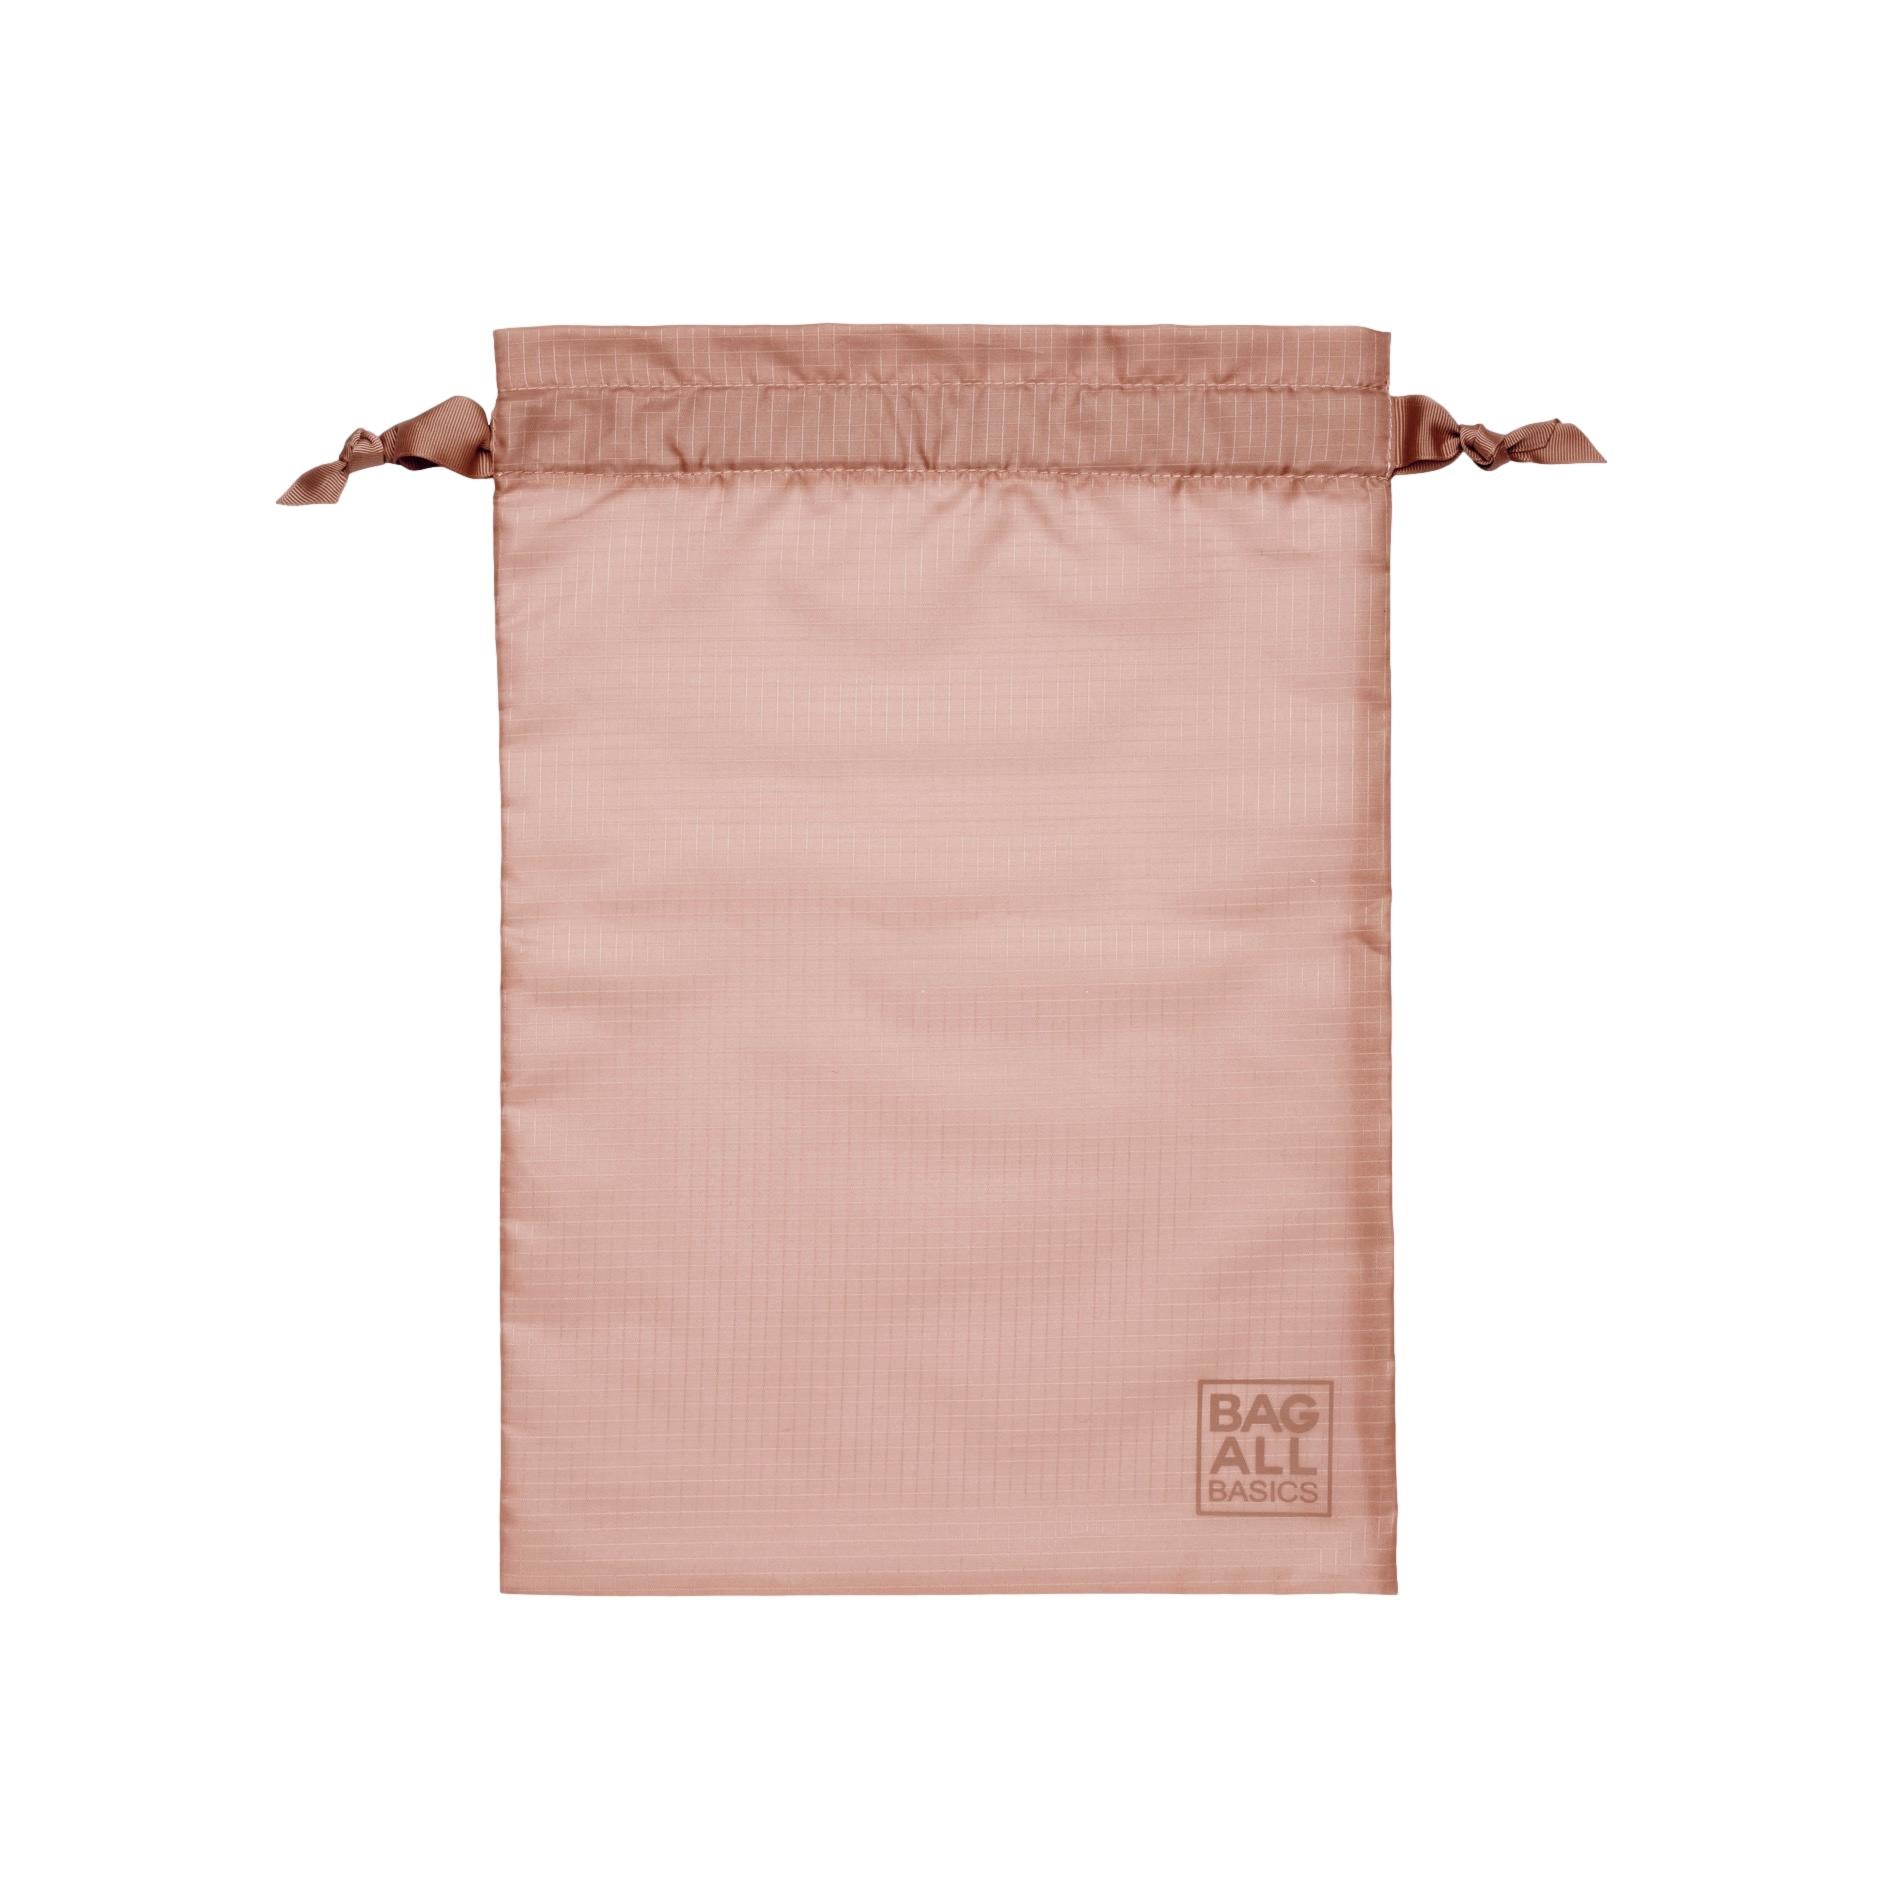 Bag-all Basic Sacs d’organisation, Rose Poudré, Pack de 8 | Bag-all